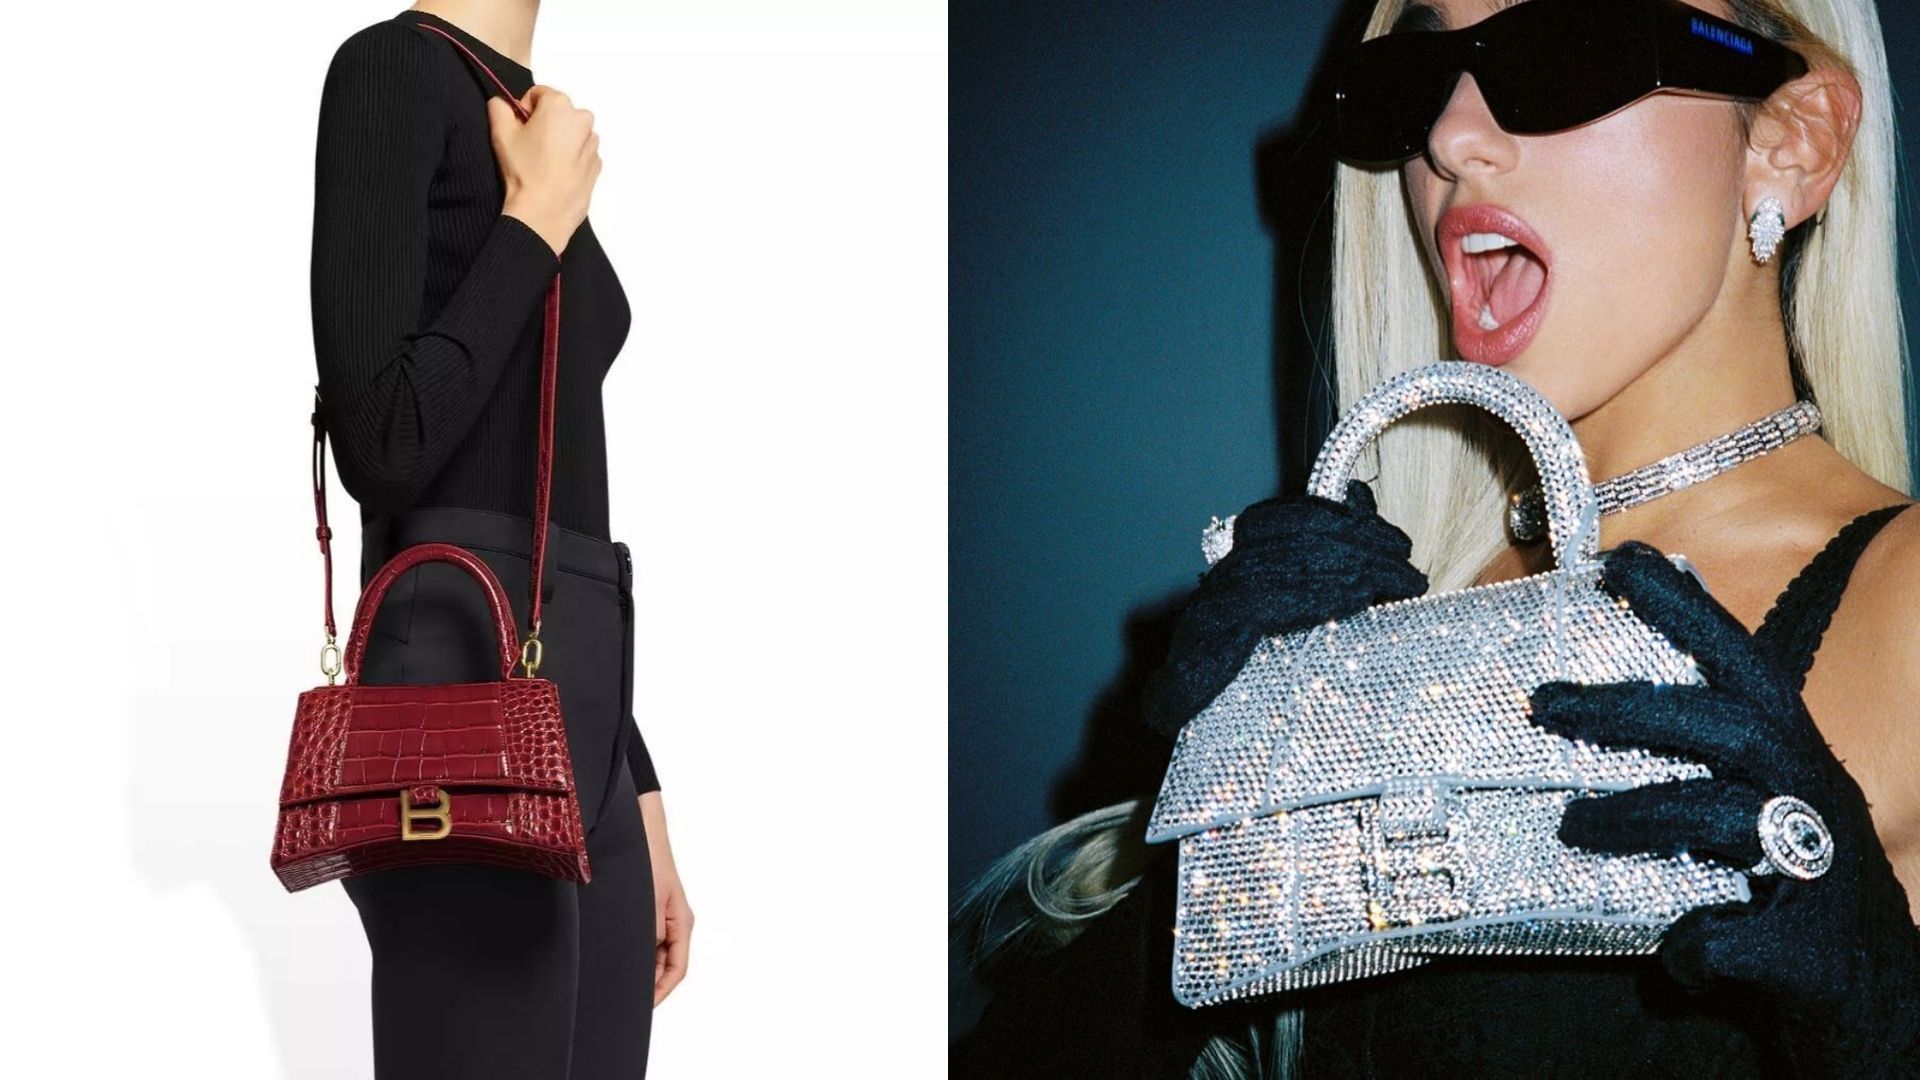 Balenciaga Bag #fashion, #style, #accessories, #Balenciaga